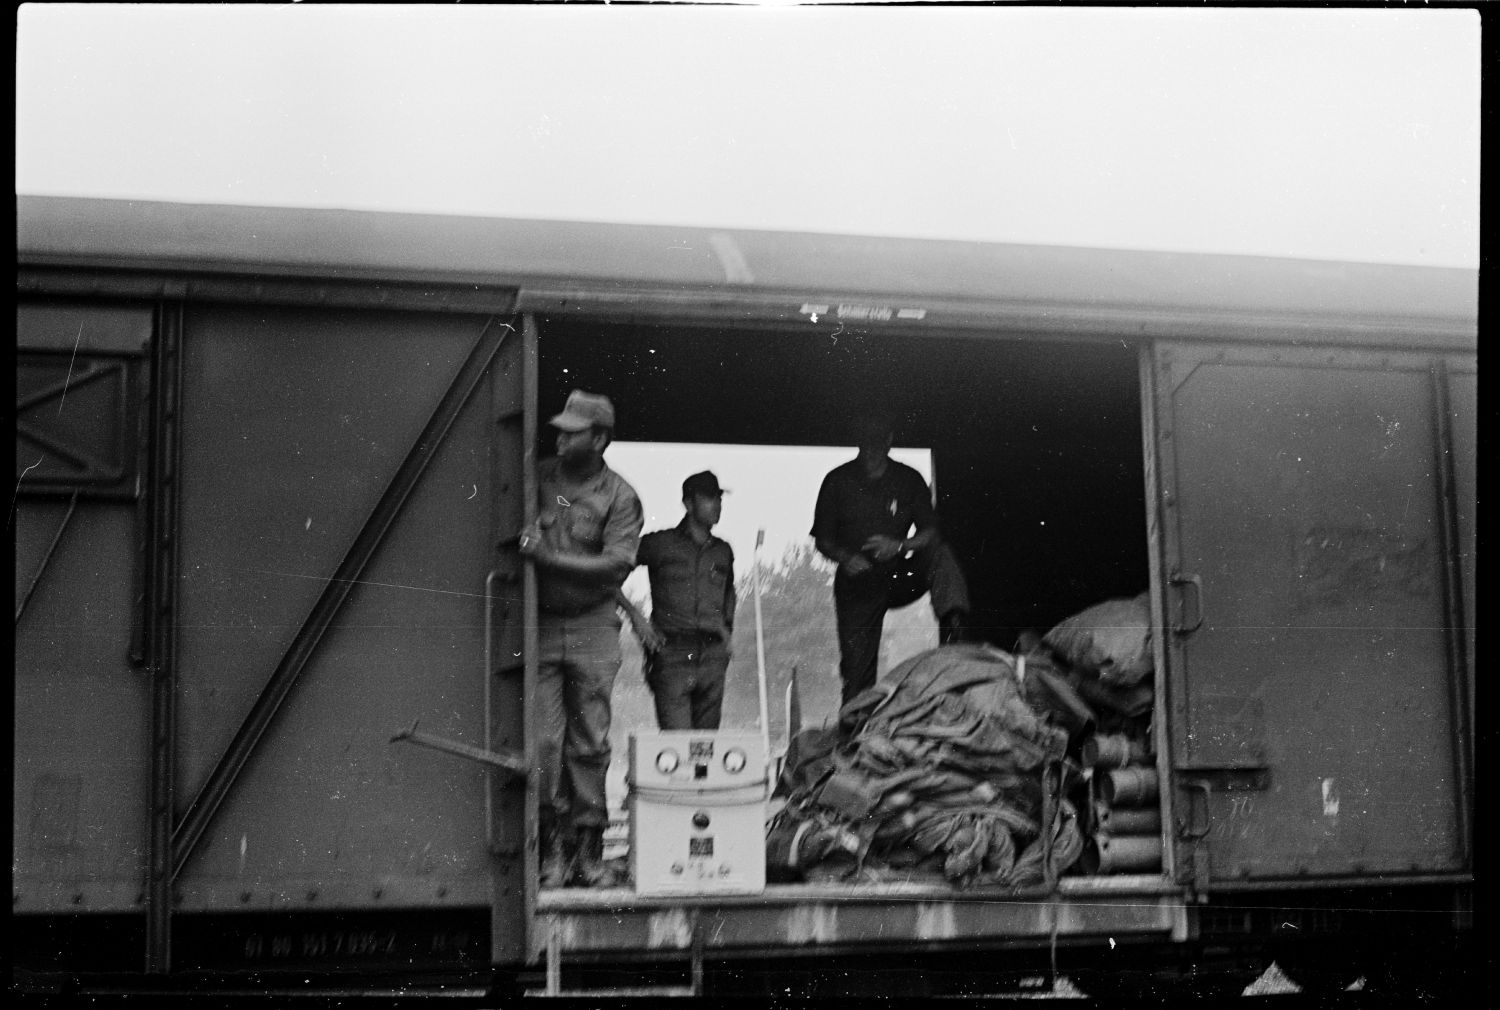 s/w-Fotografie: Transport der U.S. Army Berlin Brigade anlässlich einer Truppenübung in Grafenwöhr in Bayern (AlliiertenMuseum/U.S. Army Photograph Public Domain Mark)